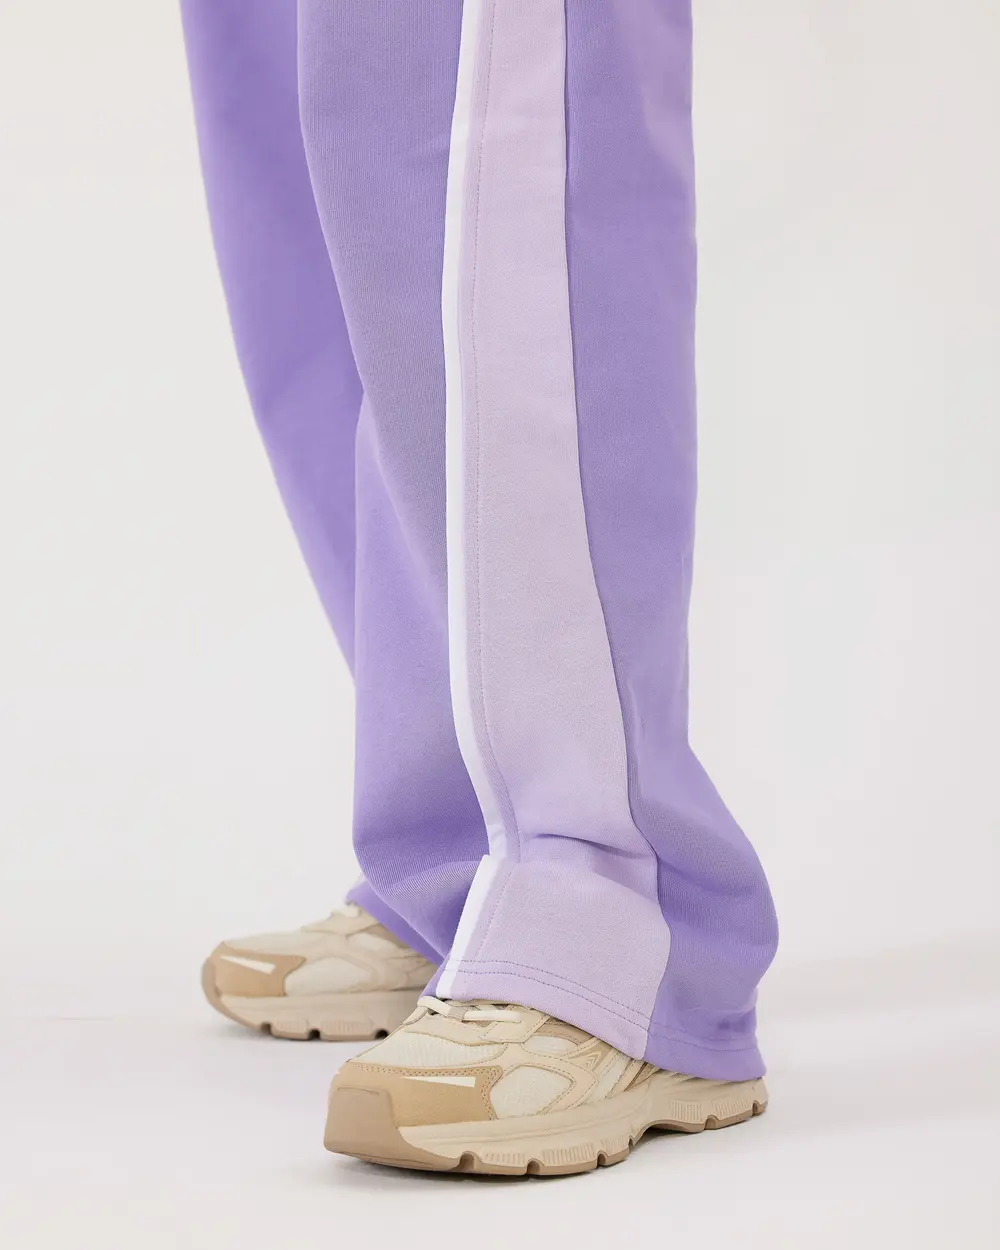 Color Transitive High Waist Sweatpants